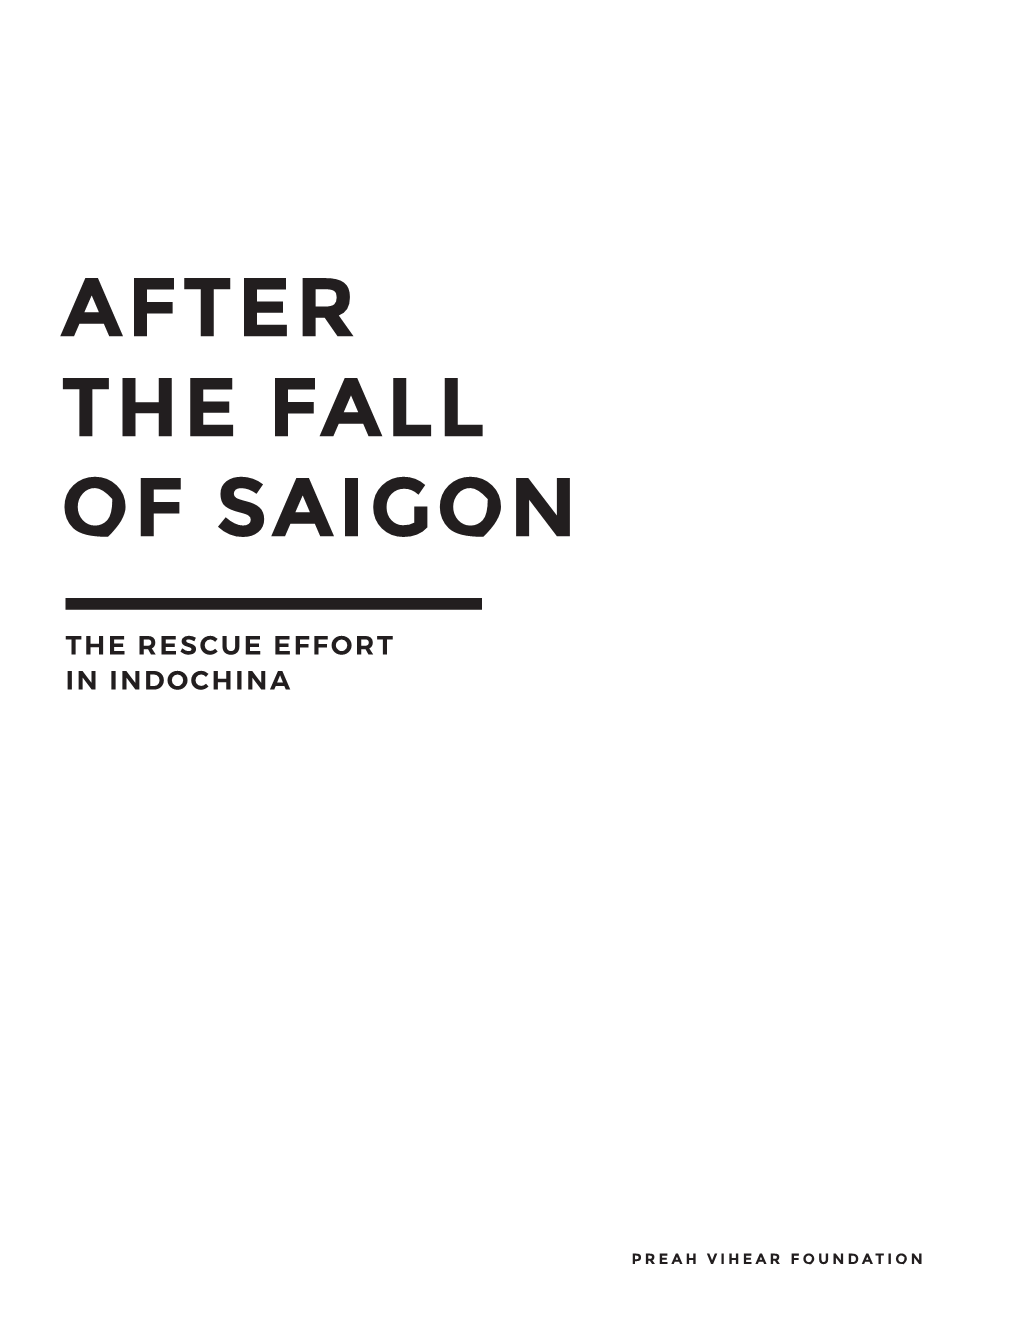 After the Fall of Saigon